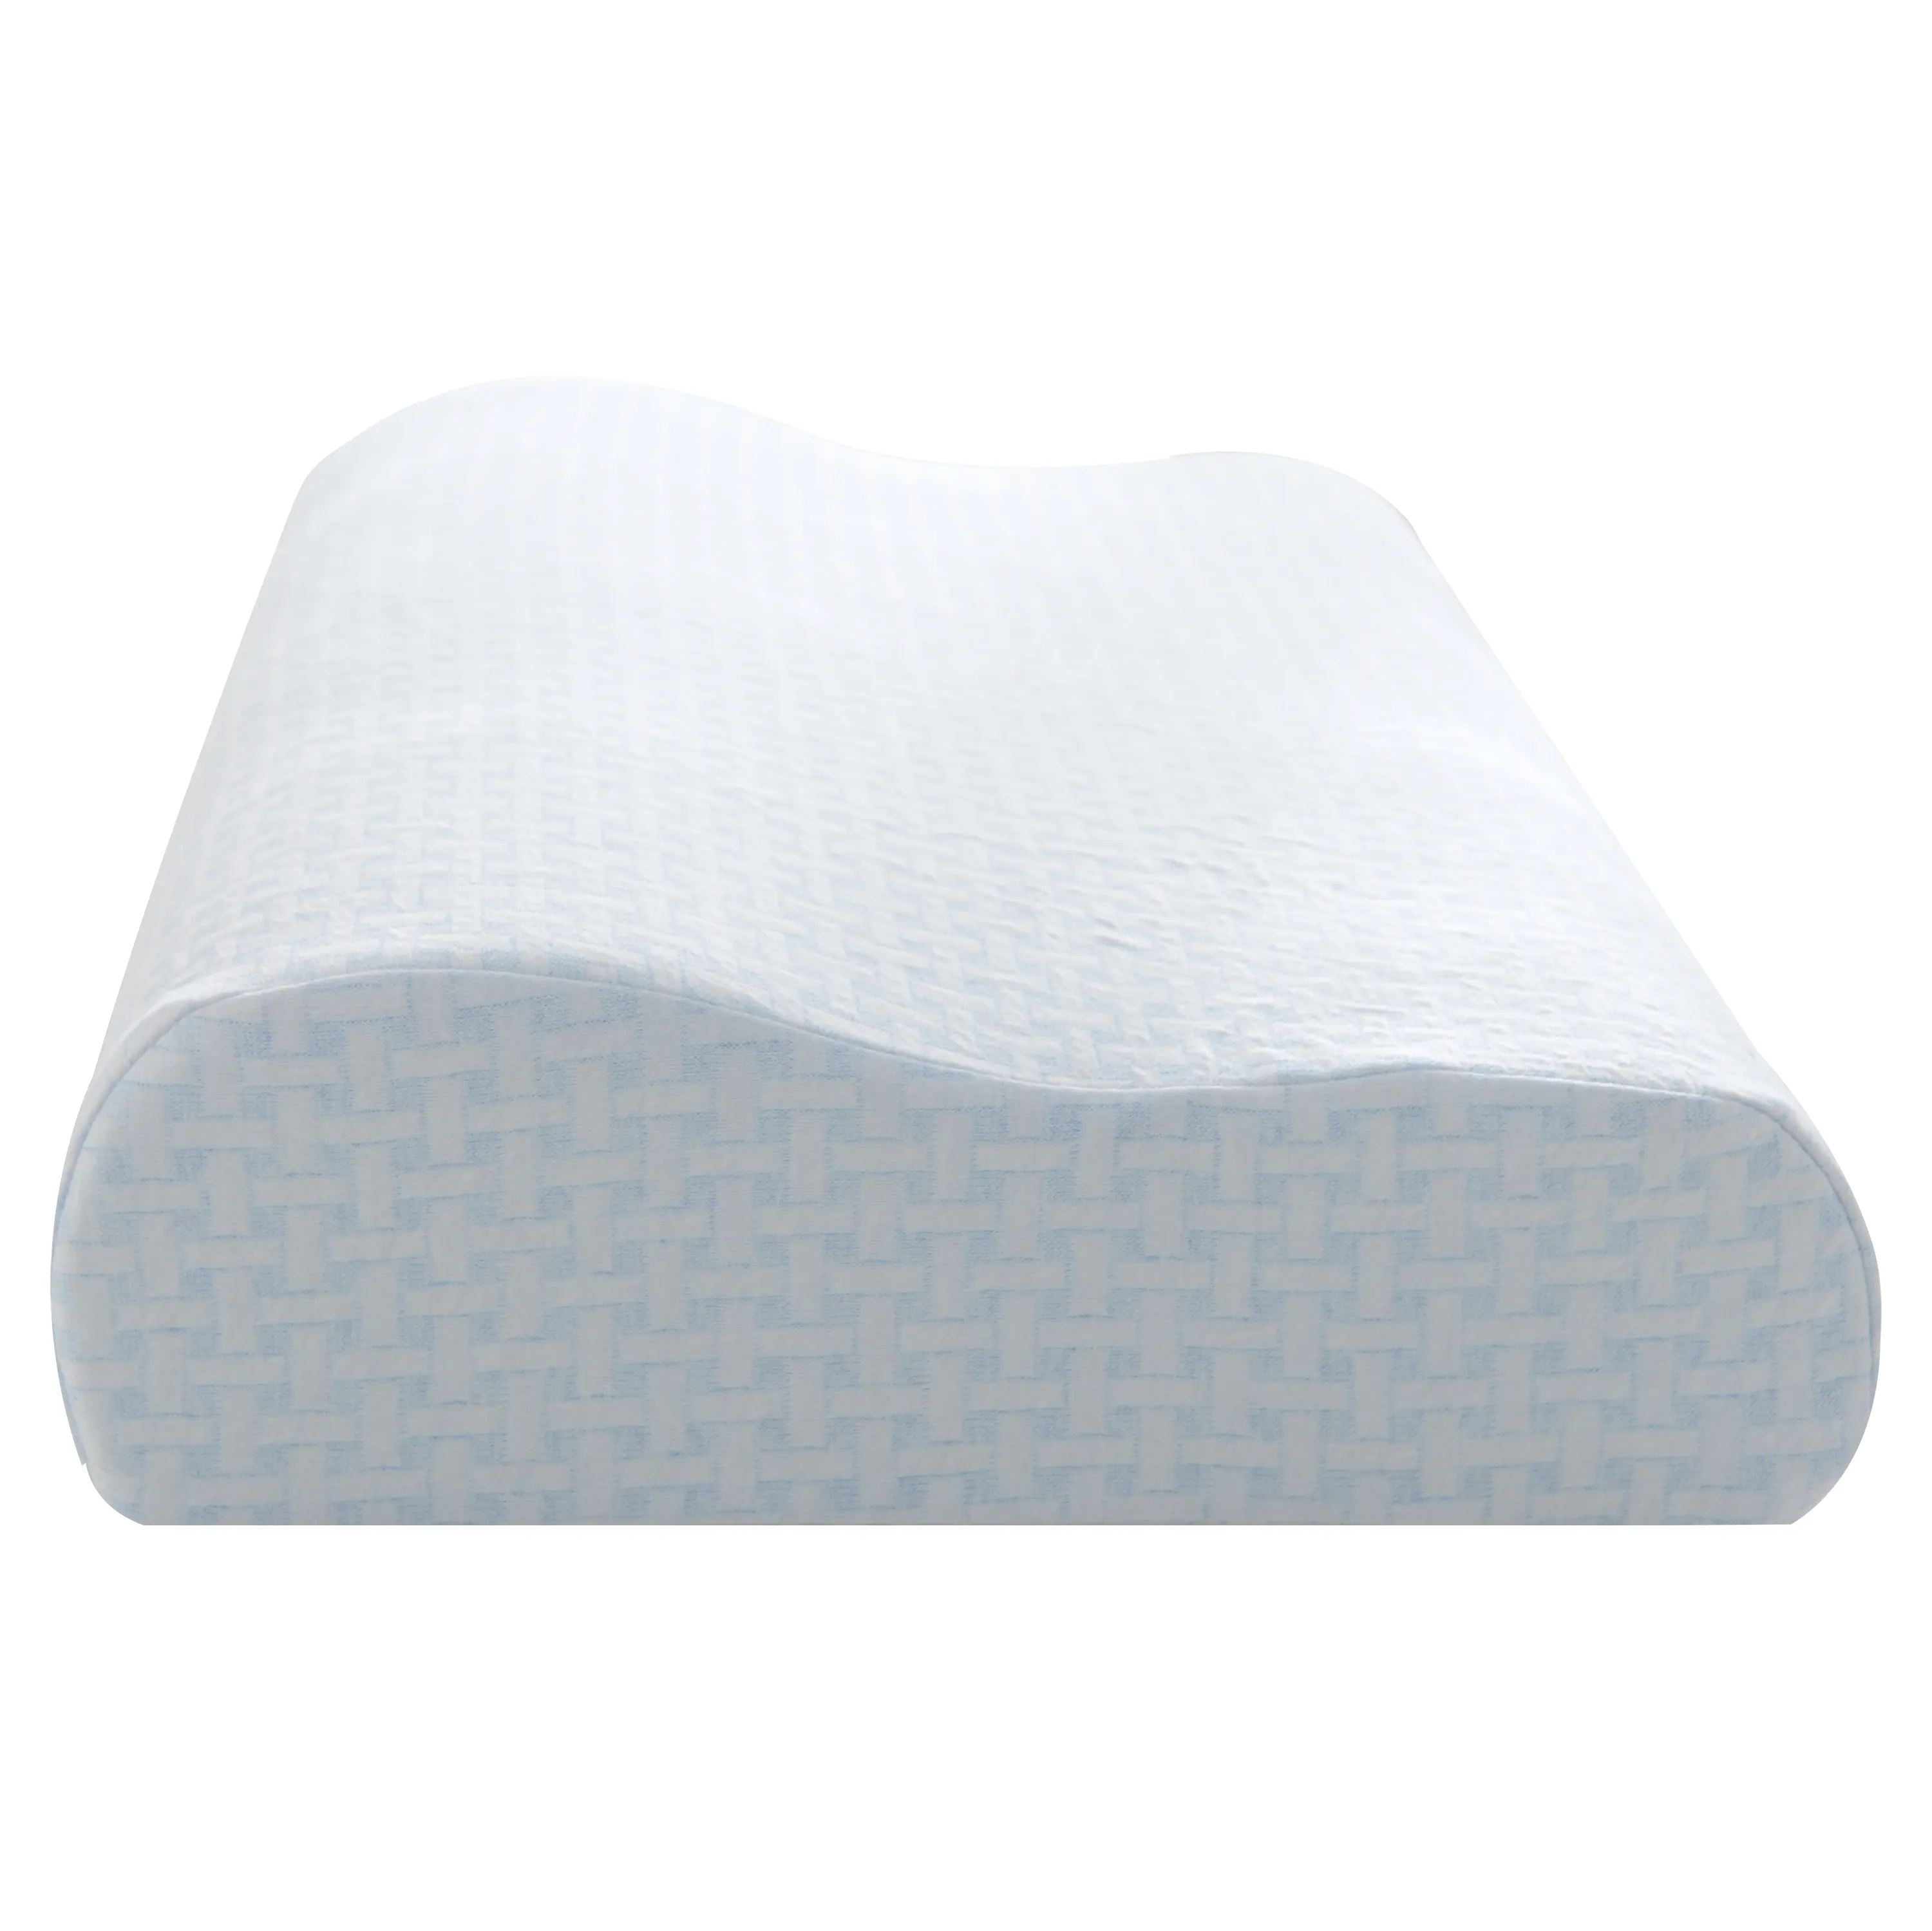 Индивидуальная подушка из полиуретановой пены с анатомическим эффектом Памяти, подушка для кровати из пены с эффектом памяти